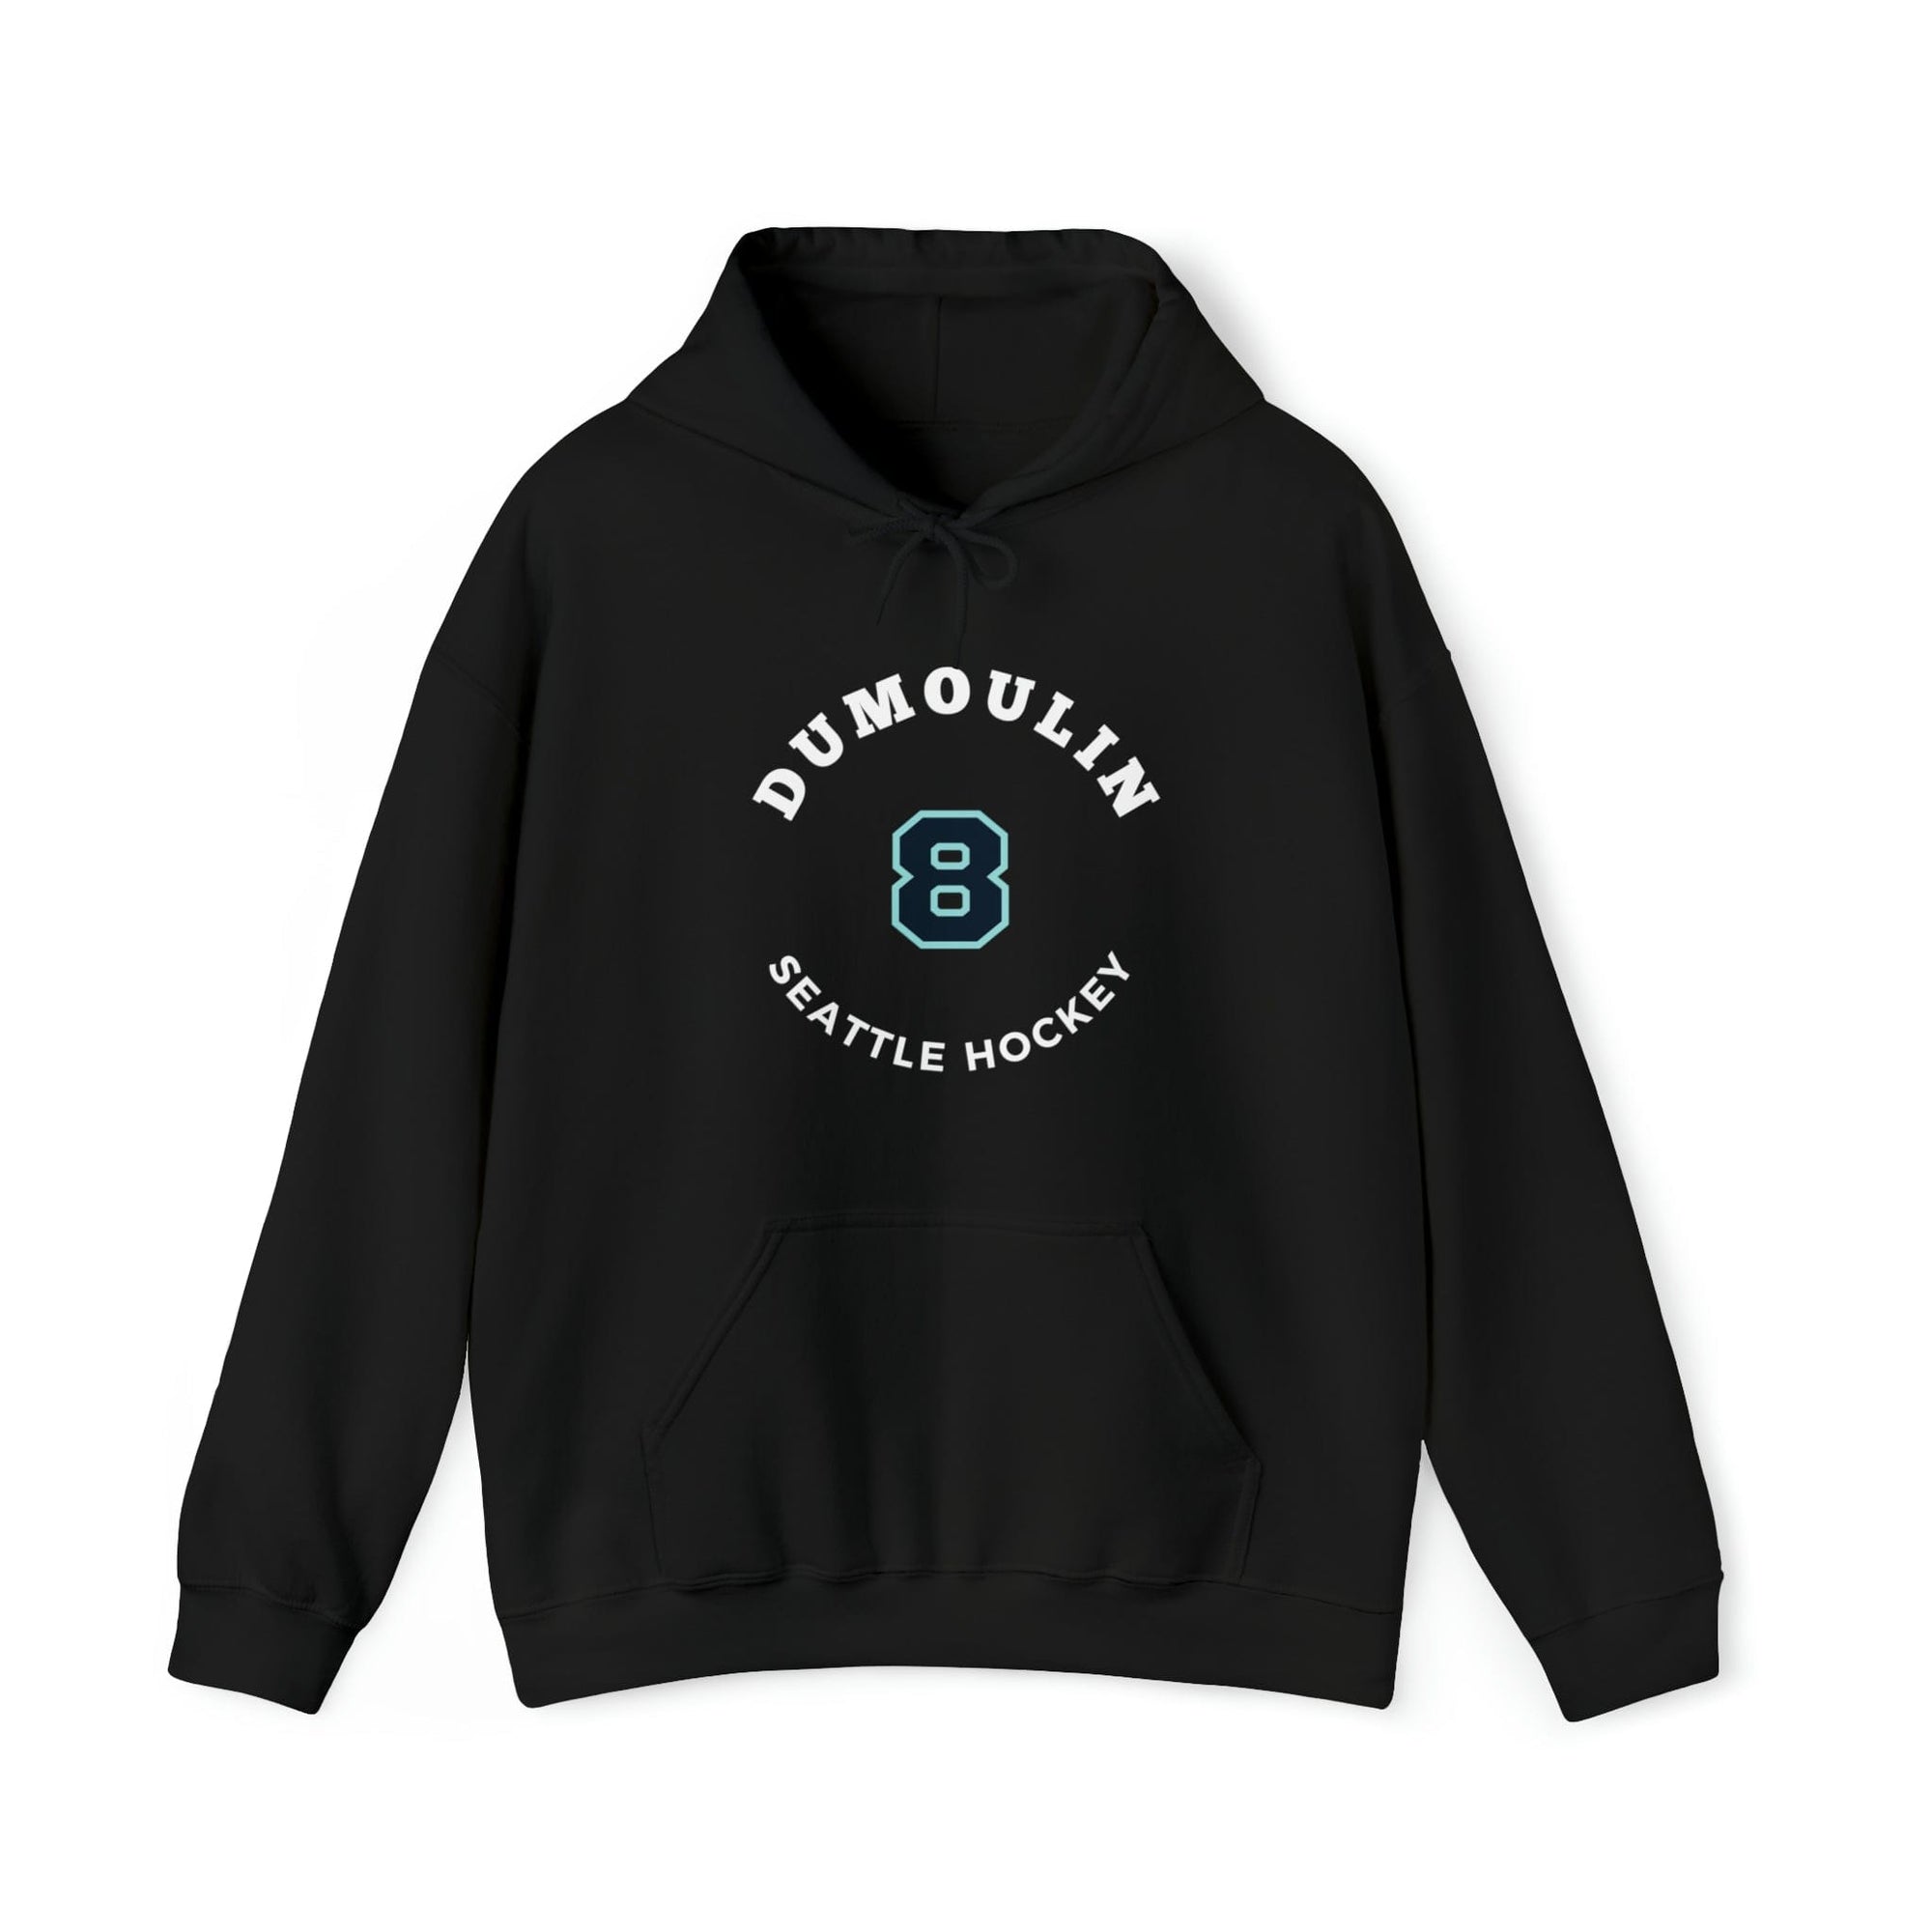 Hoodie Dumoulin 8 Seattle Hockey Number Arch Design Unisex Hooded Sweatshirt